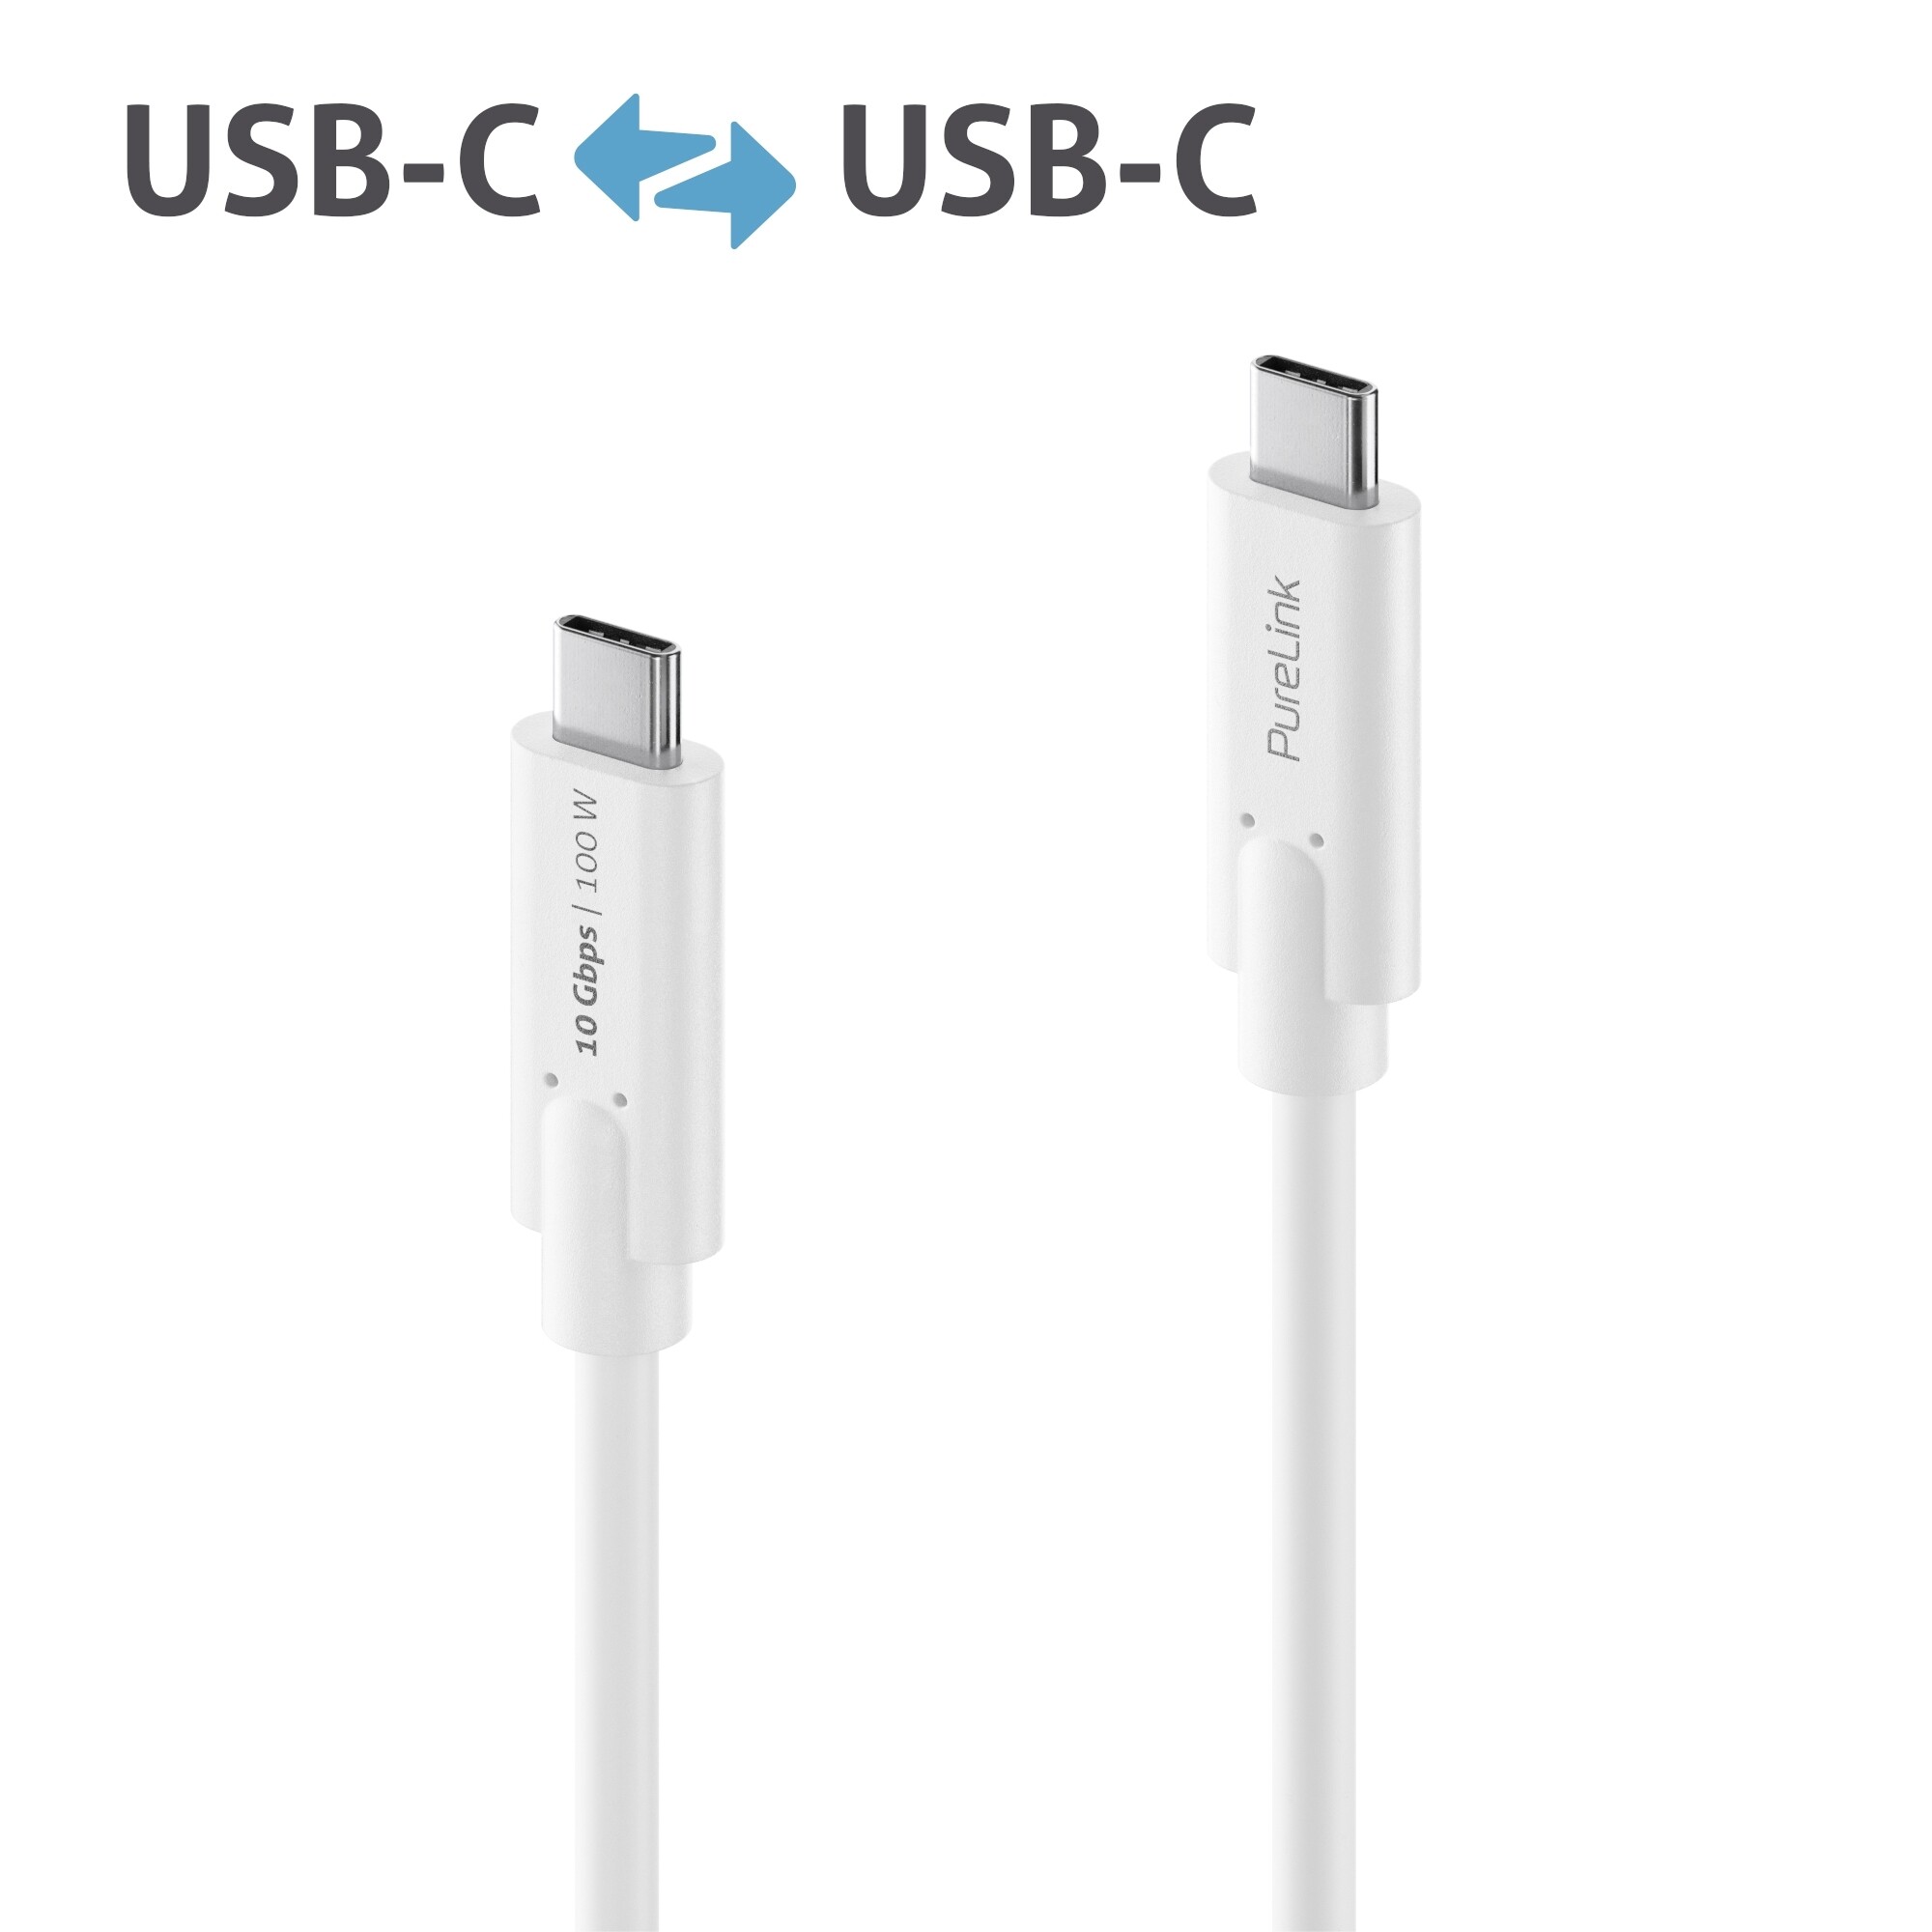 Purelink-IS2510-010-USB-C-auf-USB-C-Gen-2-Kabel-1m-weiss